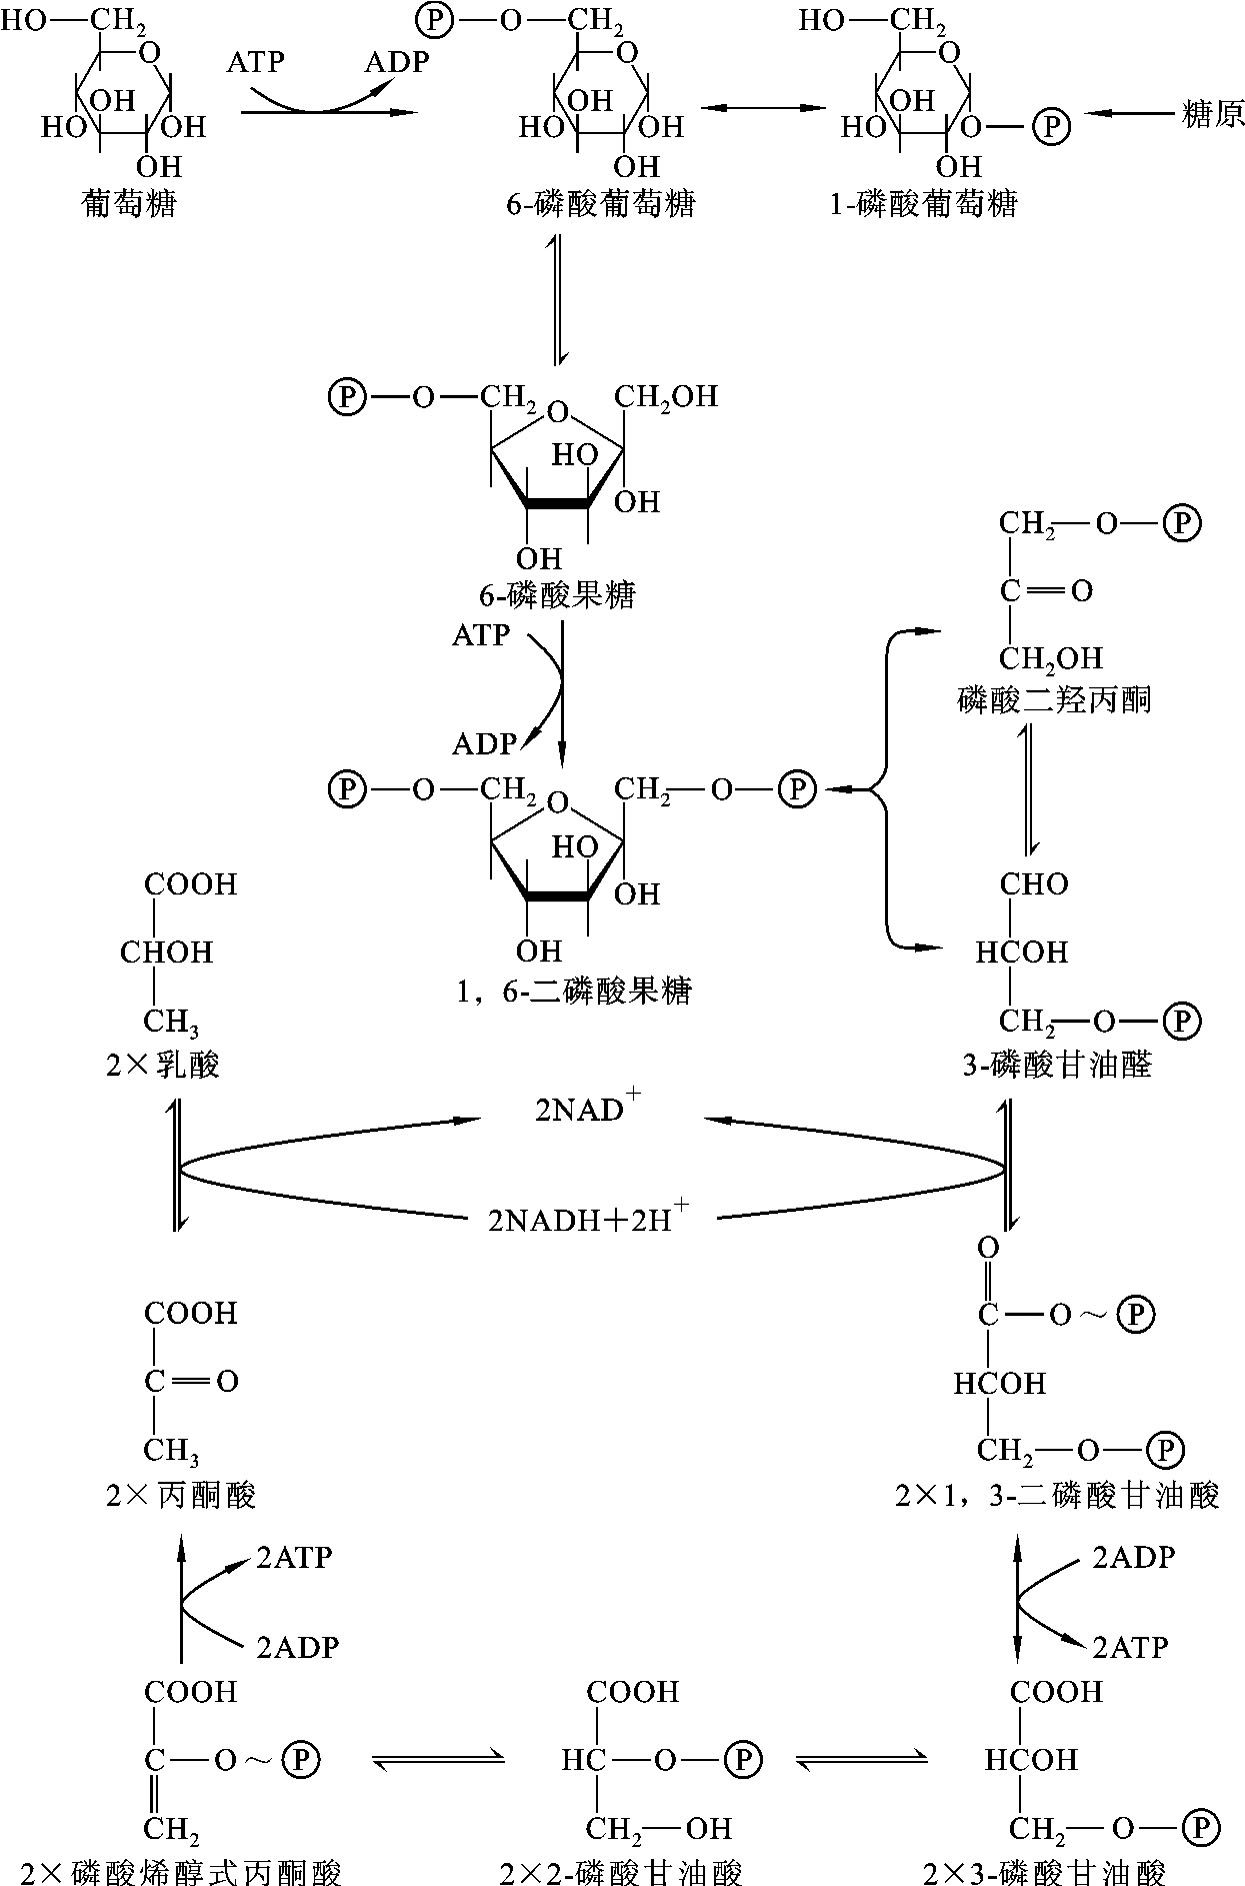 糖酵解过程图图片